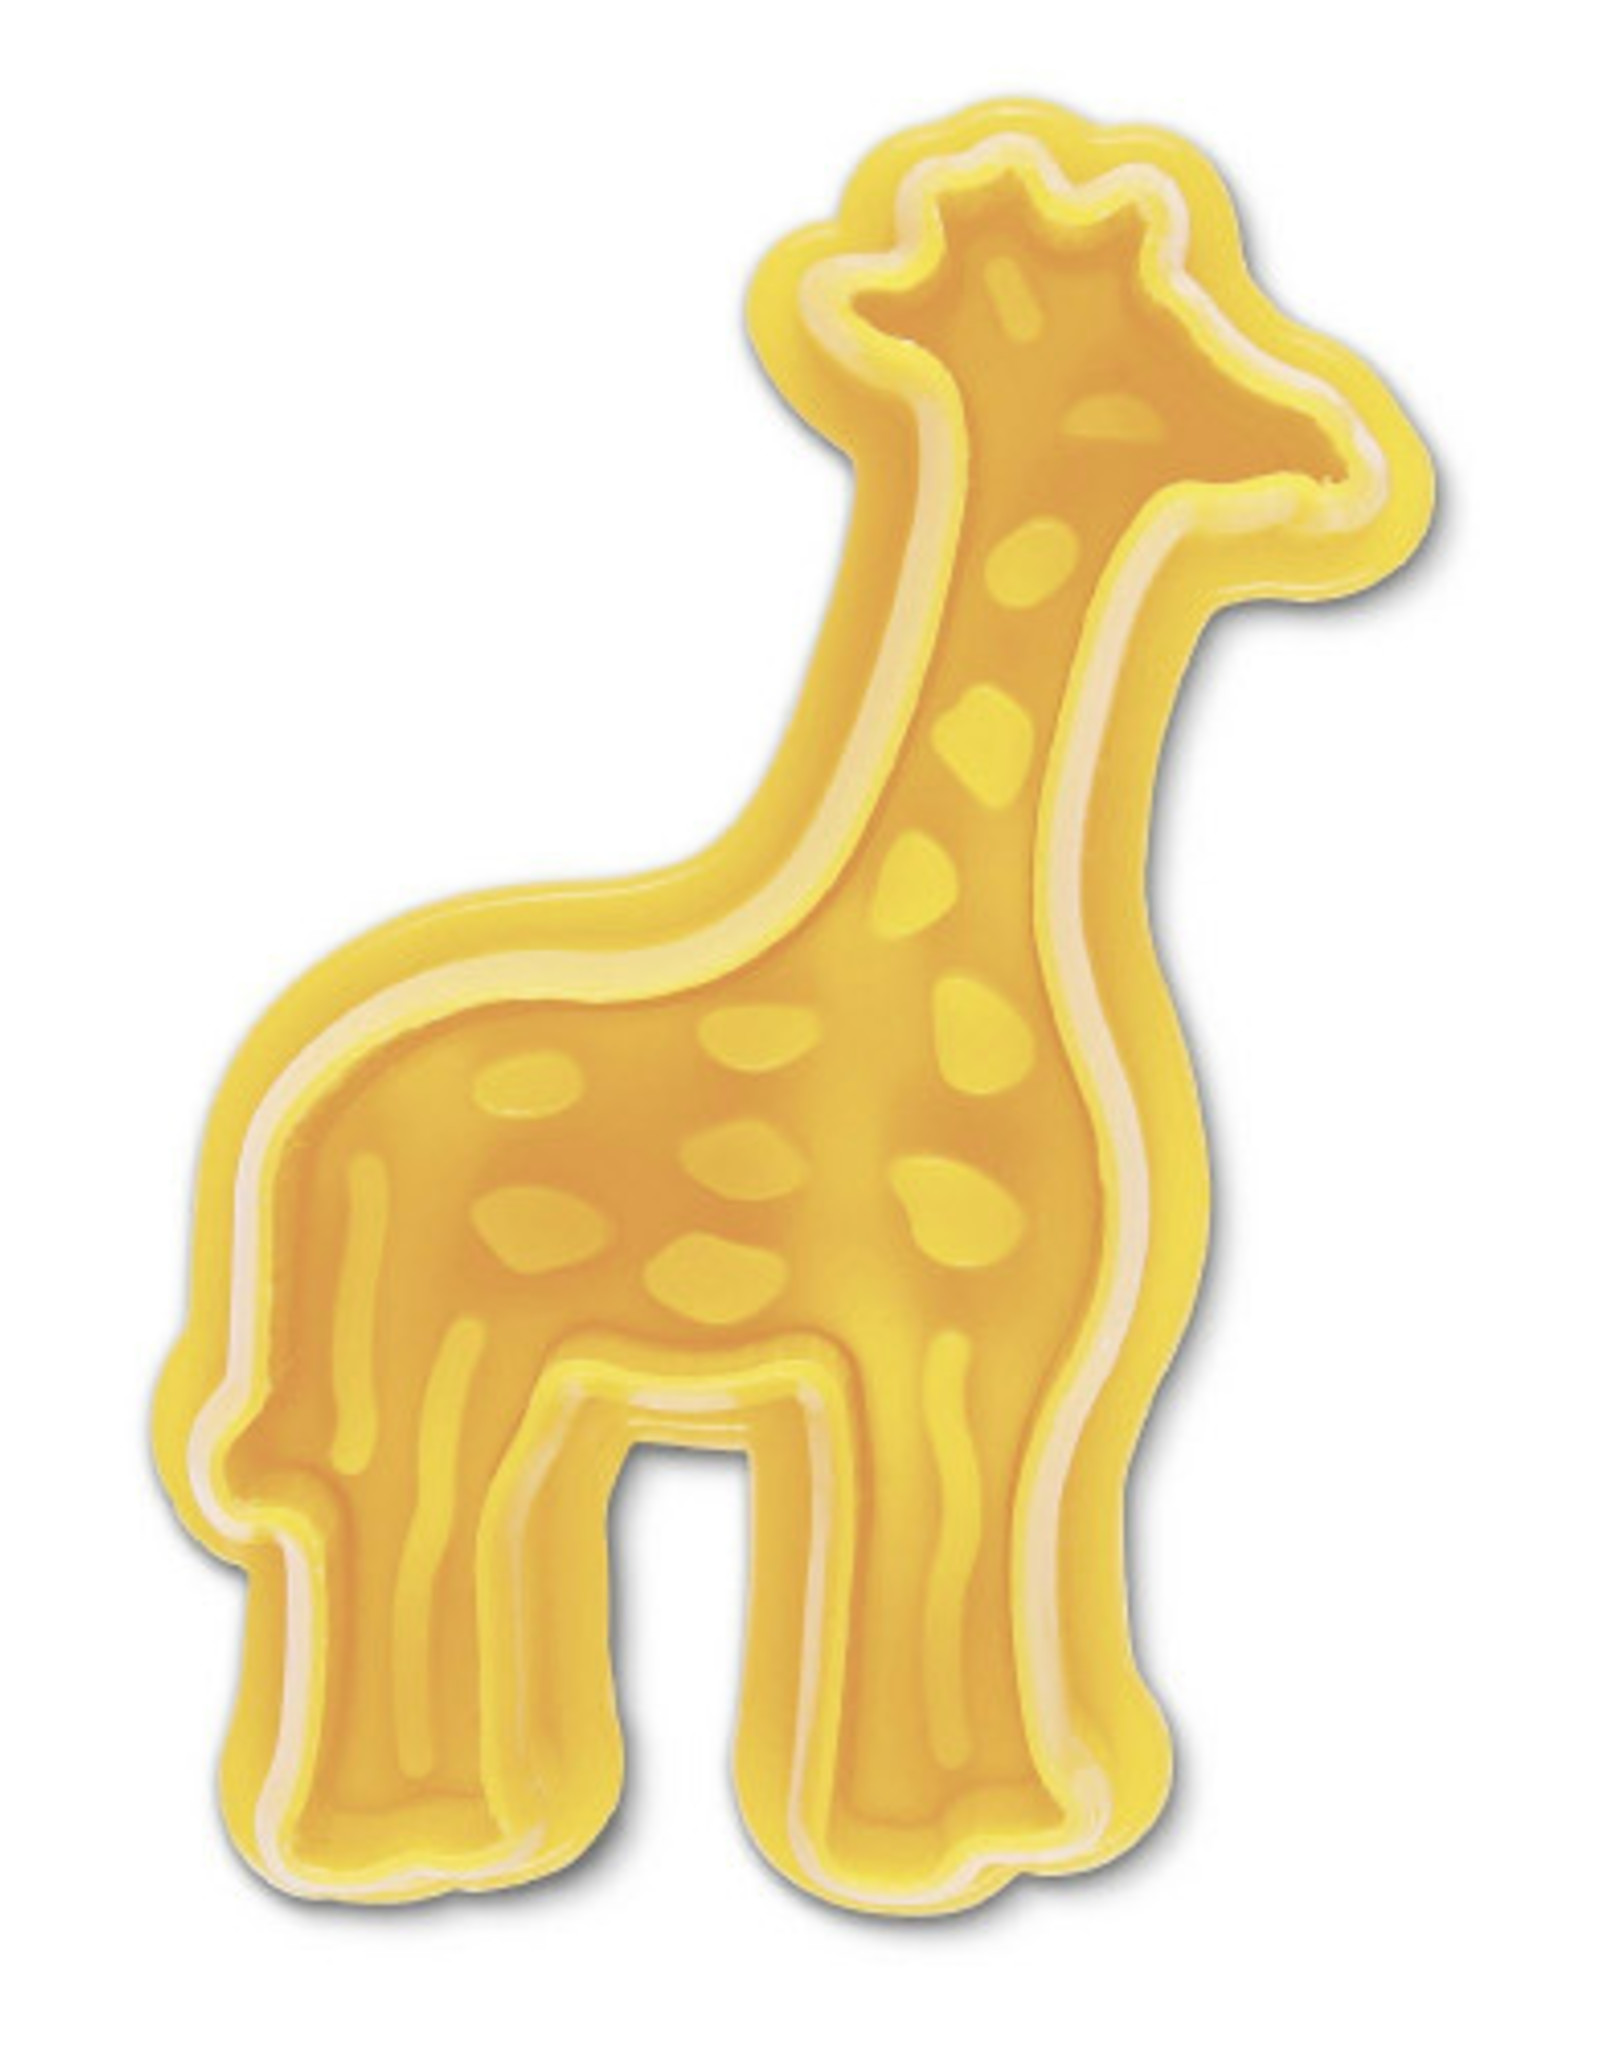 Städter Städter Plunger Cutter Giraffe